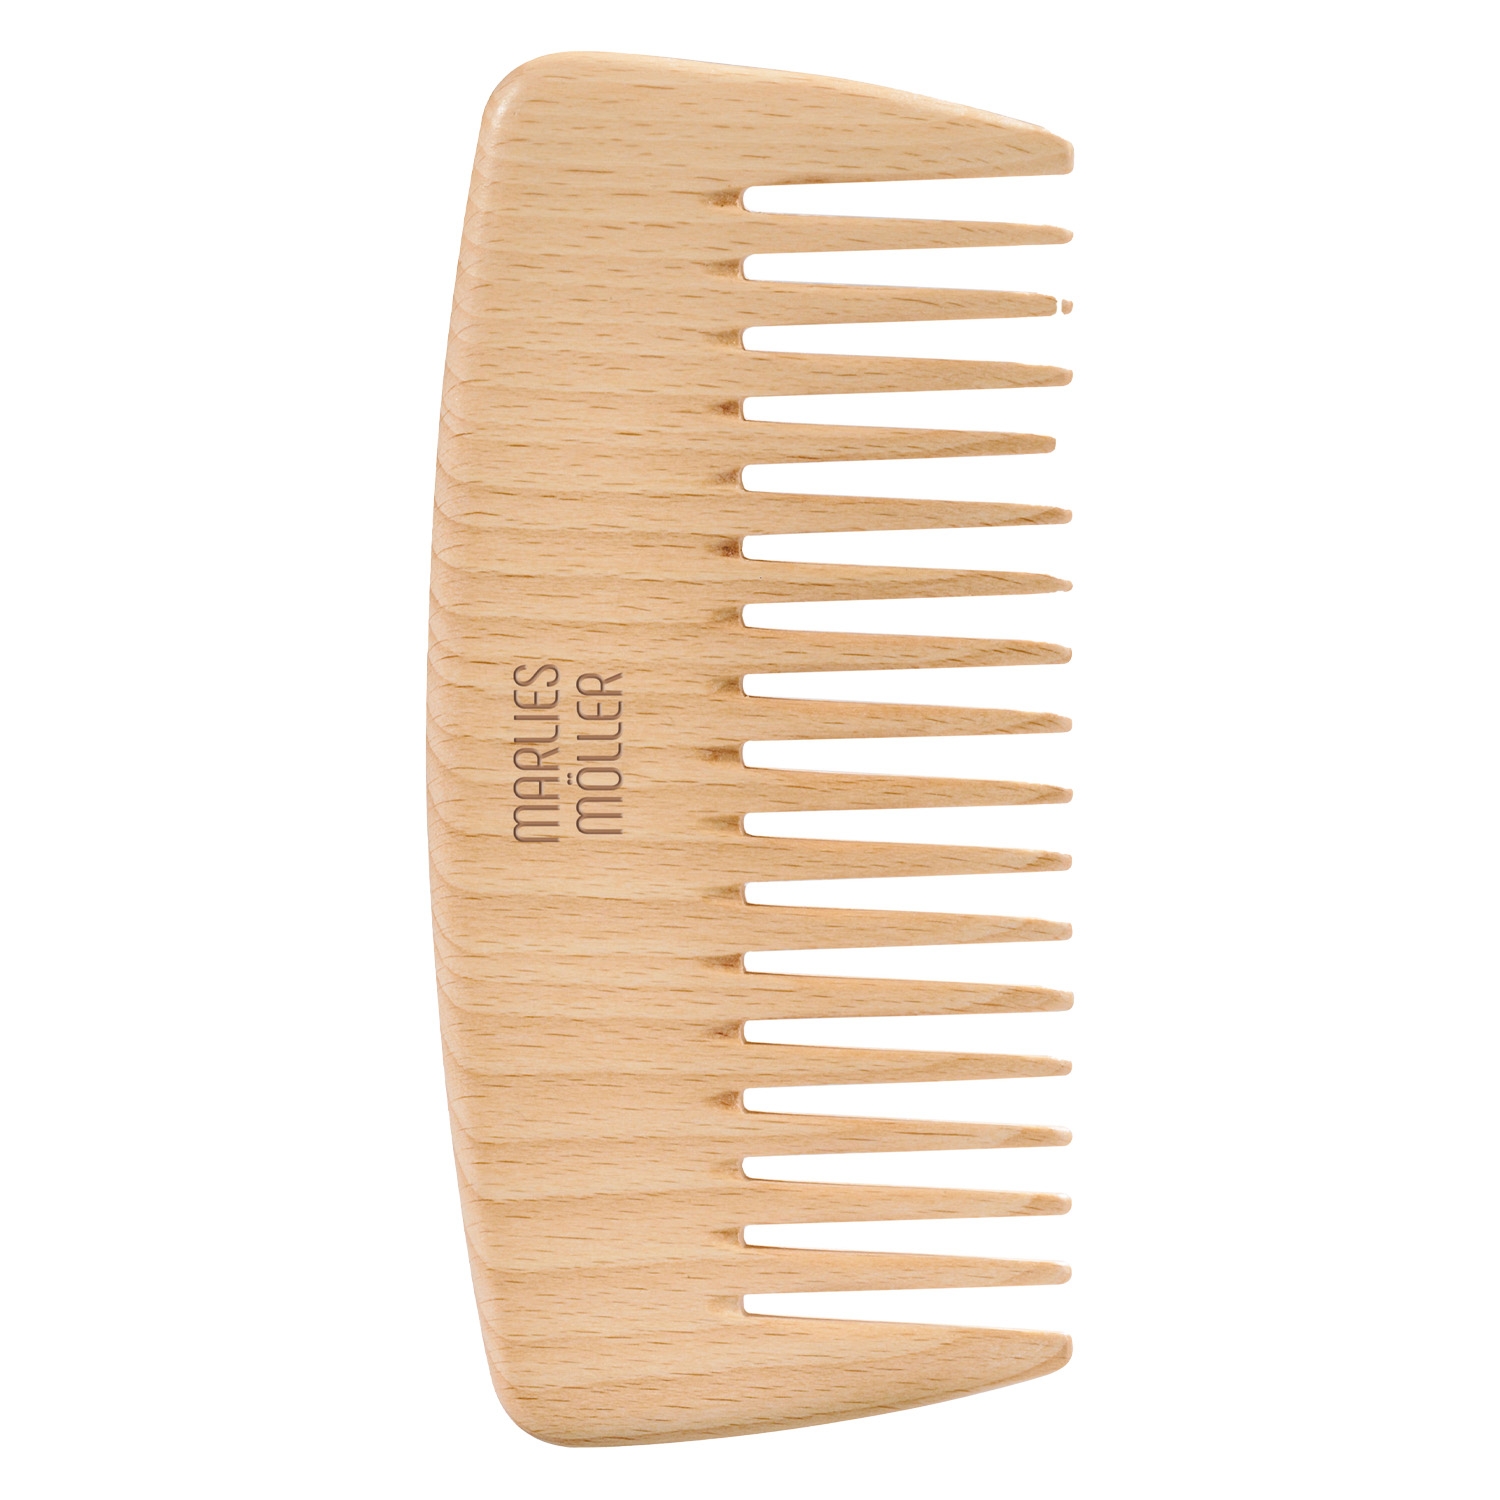 Produktbild von MM Brushes - Allround Comb